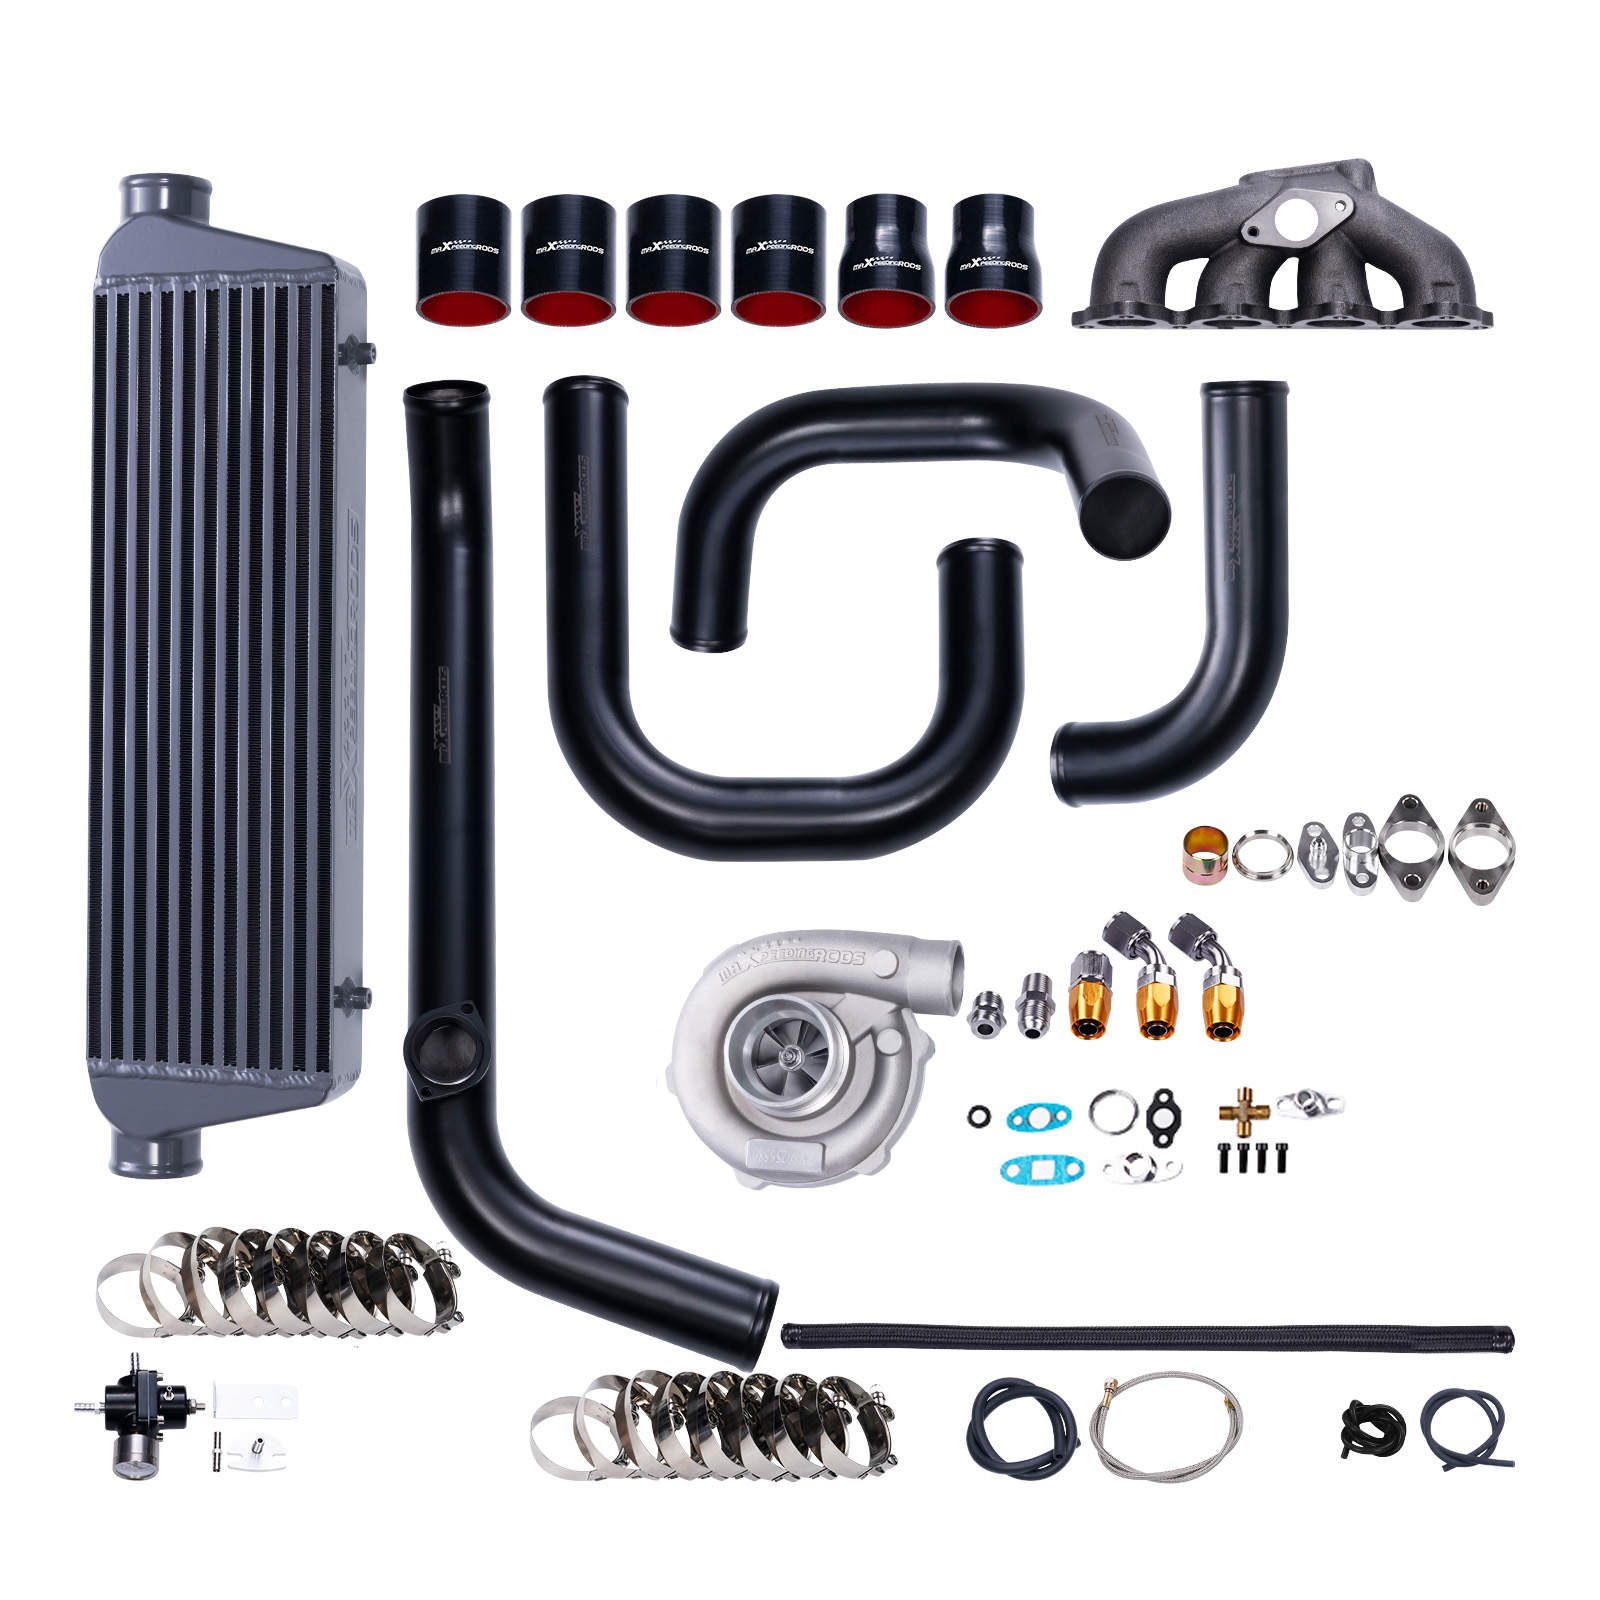 Maxpeedingrods Turbo Kits for D16Z6 | Maxpeedingrods Auto parts